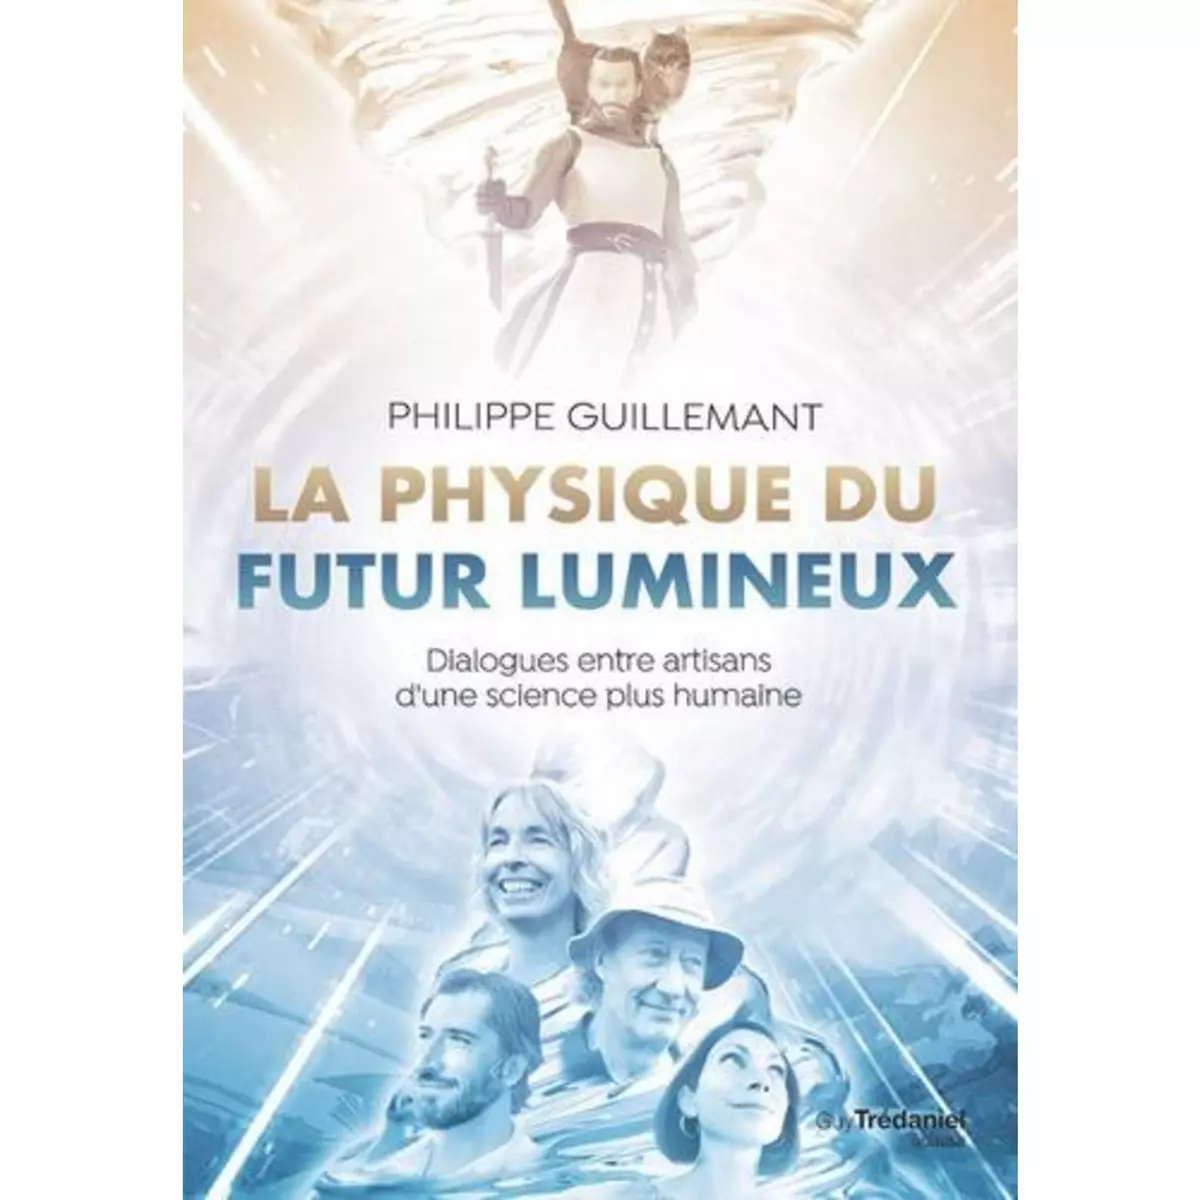  LA PHYSIQUE DU FUTUR LUMINEUX. DIALOGUES ENTRE ARTISANS D'UNE SCIENCE PLUS HUMAINE, Guillemant Philippe